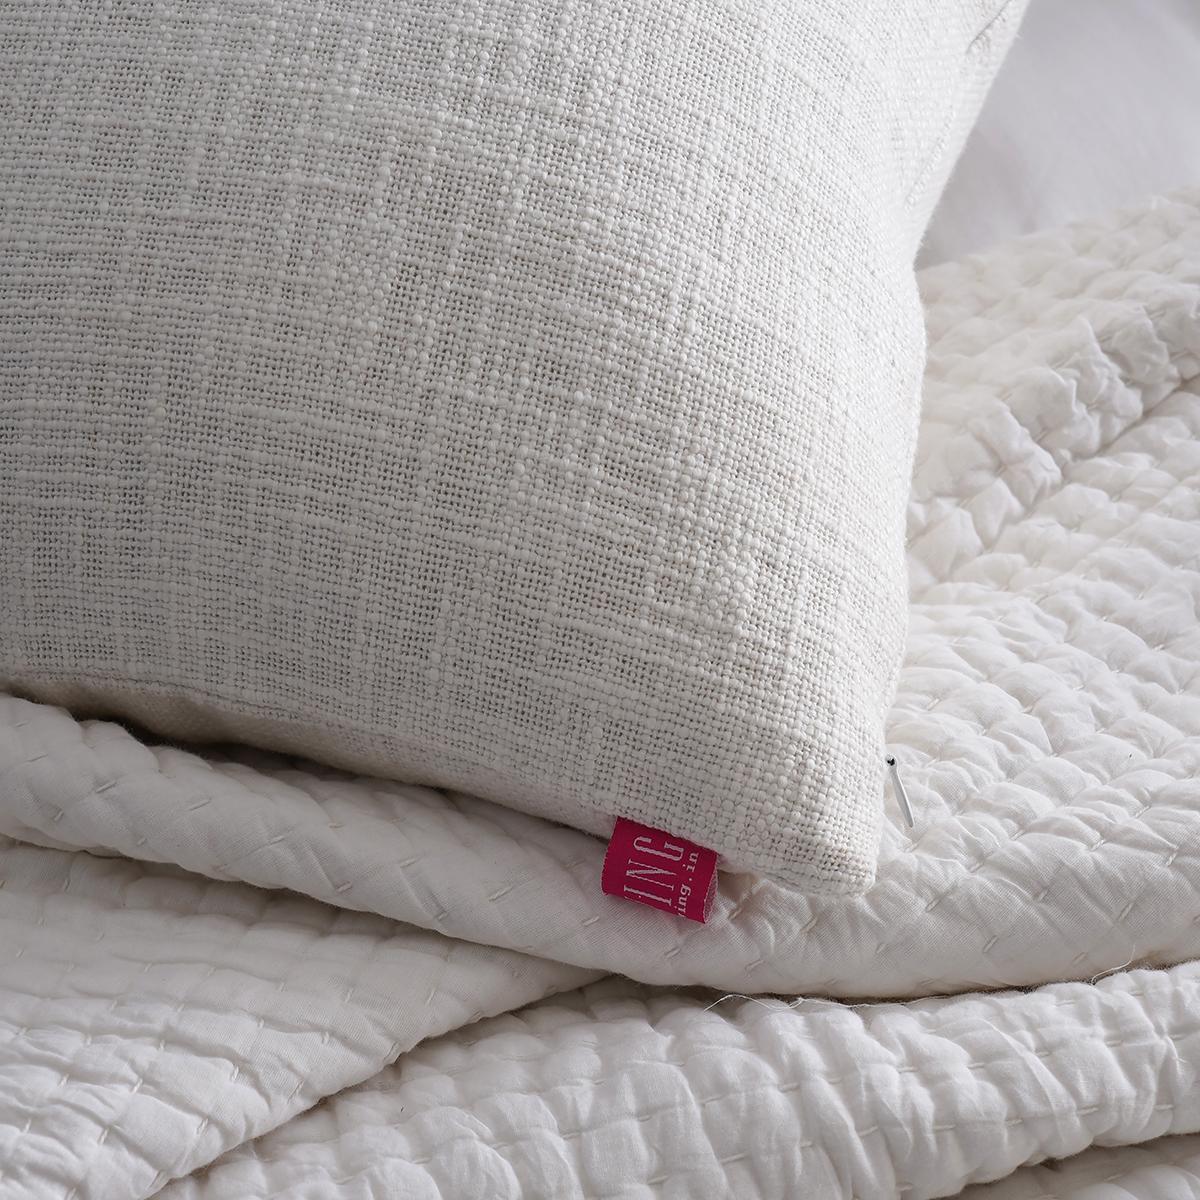 White slub cotton Pillow cover, sizes available